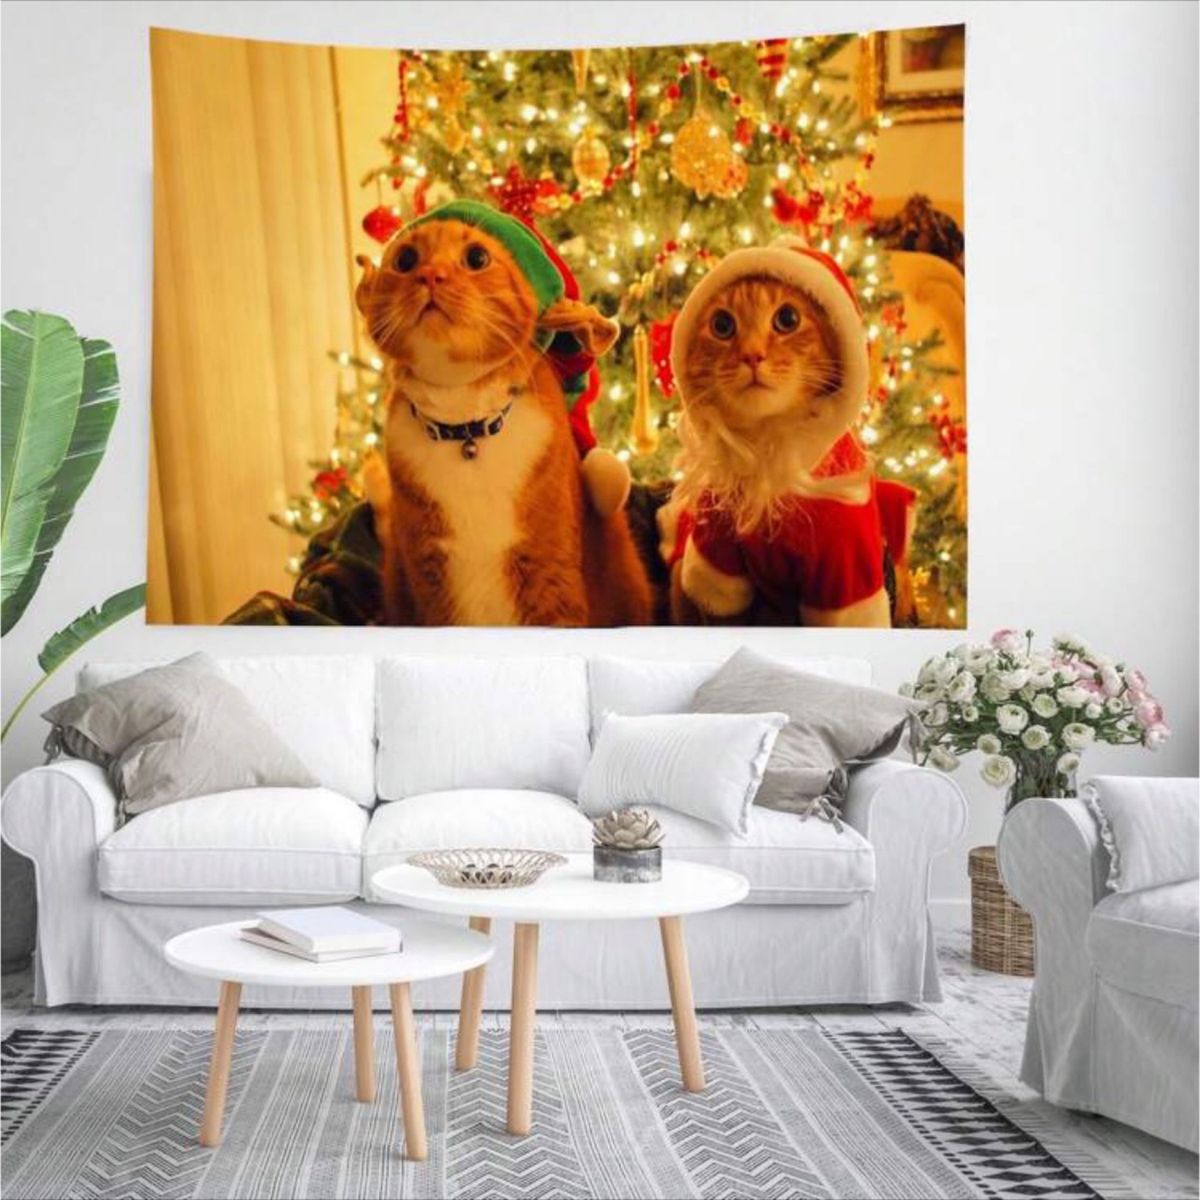 タペストリー クリスマス 背景布 猫 可愛い ウォールデコ フォトブース 撮影 模様替え サンタさん